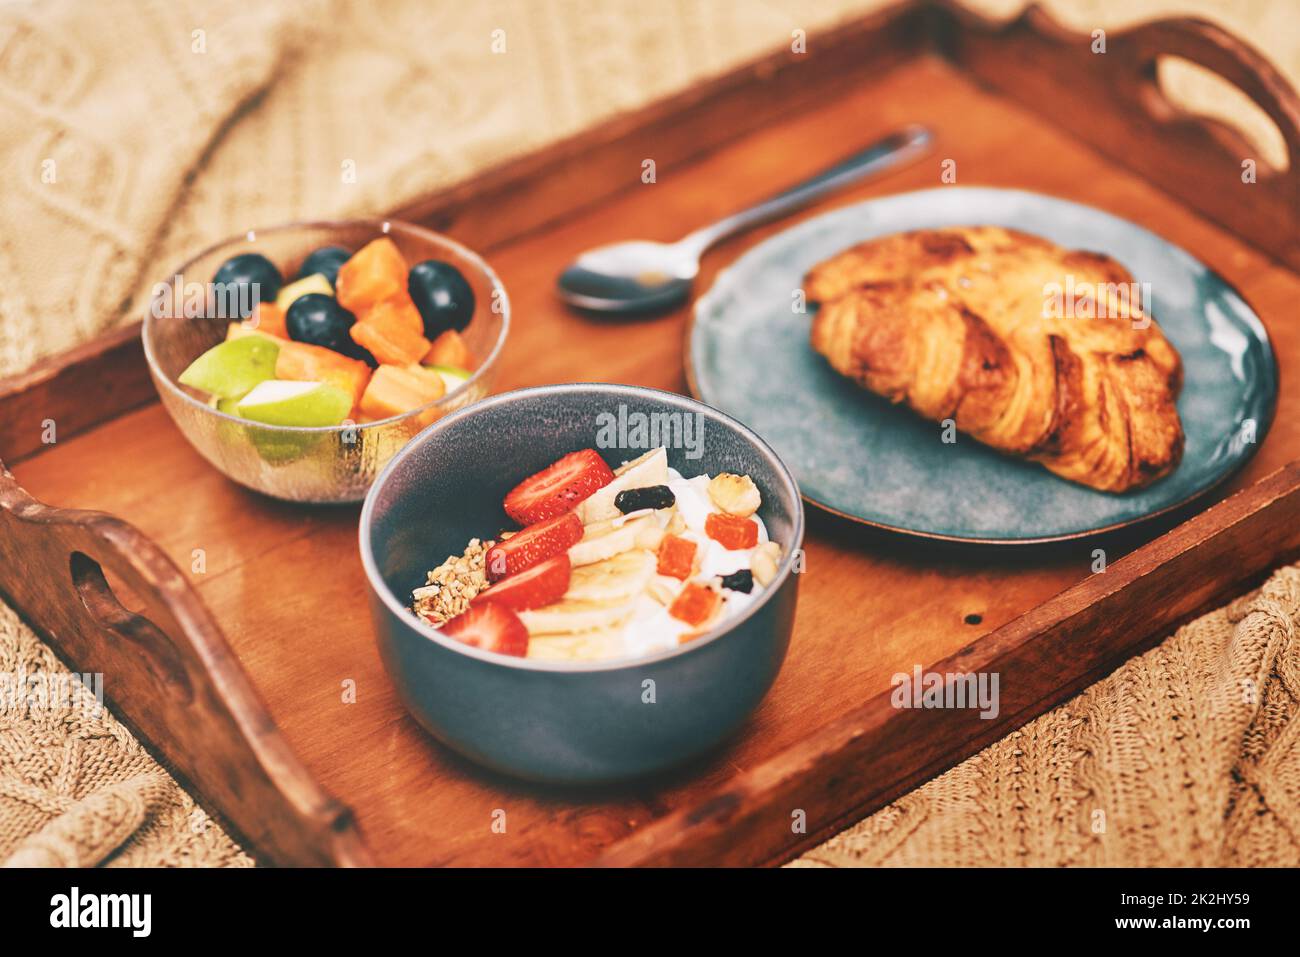 Il cibo è ottimo e lo stile di vita. Una colazione ordinata, preparata su un vassoio di legno e servita a letto a casa, è stata tagliata a pezzi. Foto Stock